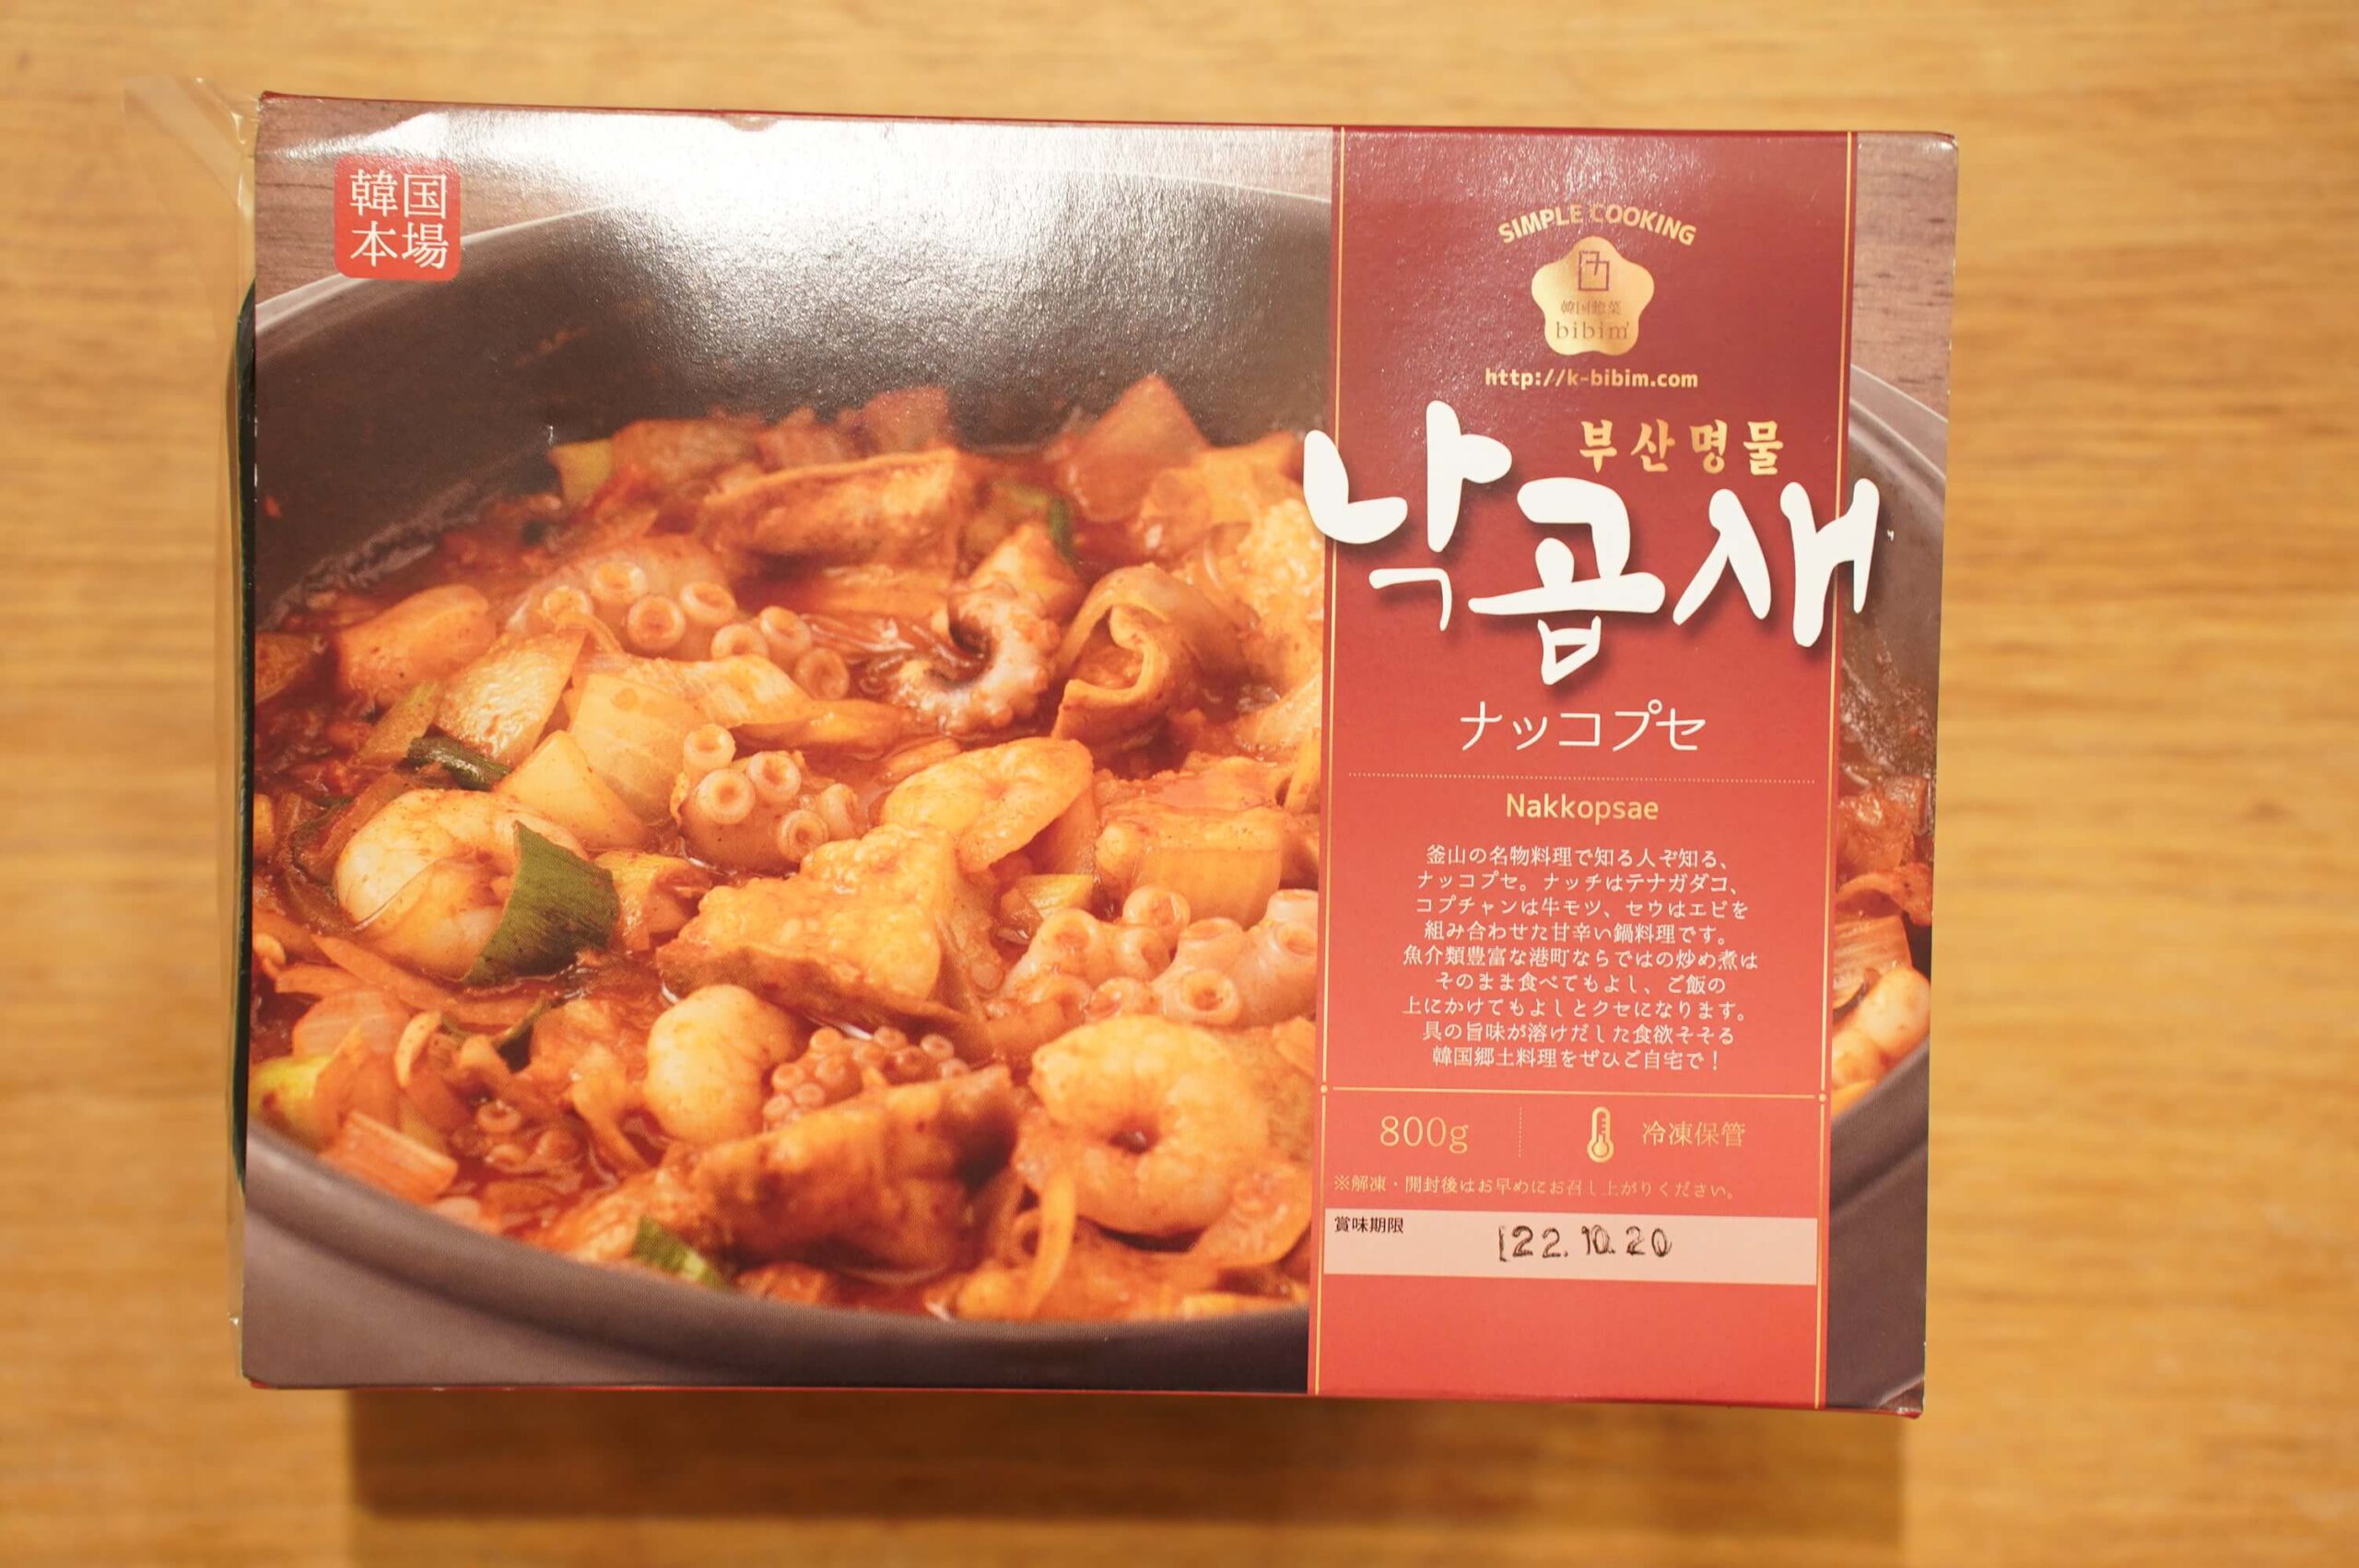 おすすめの美味しい韓国料理の冷凍食品「ナッコプセ」のパッケージ写真